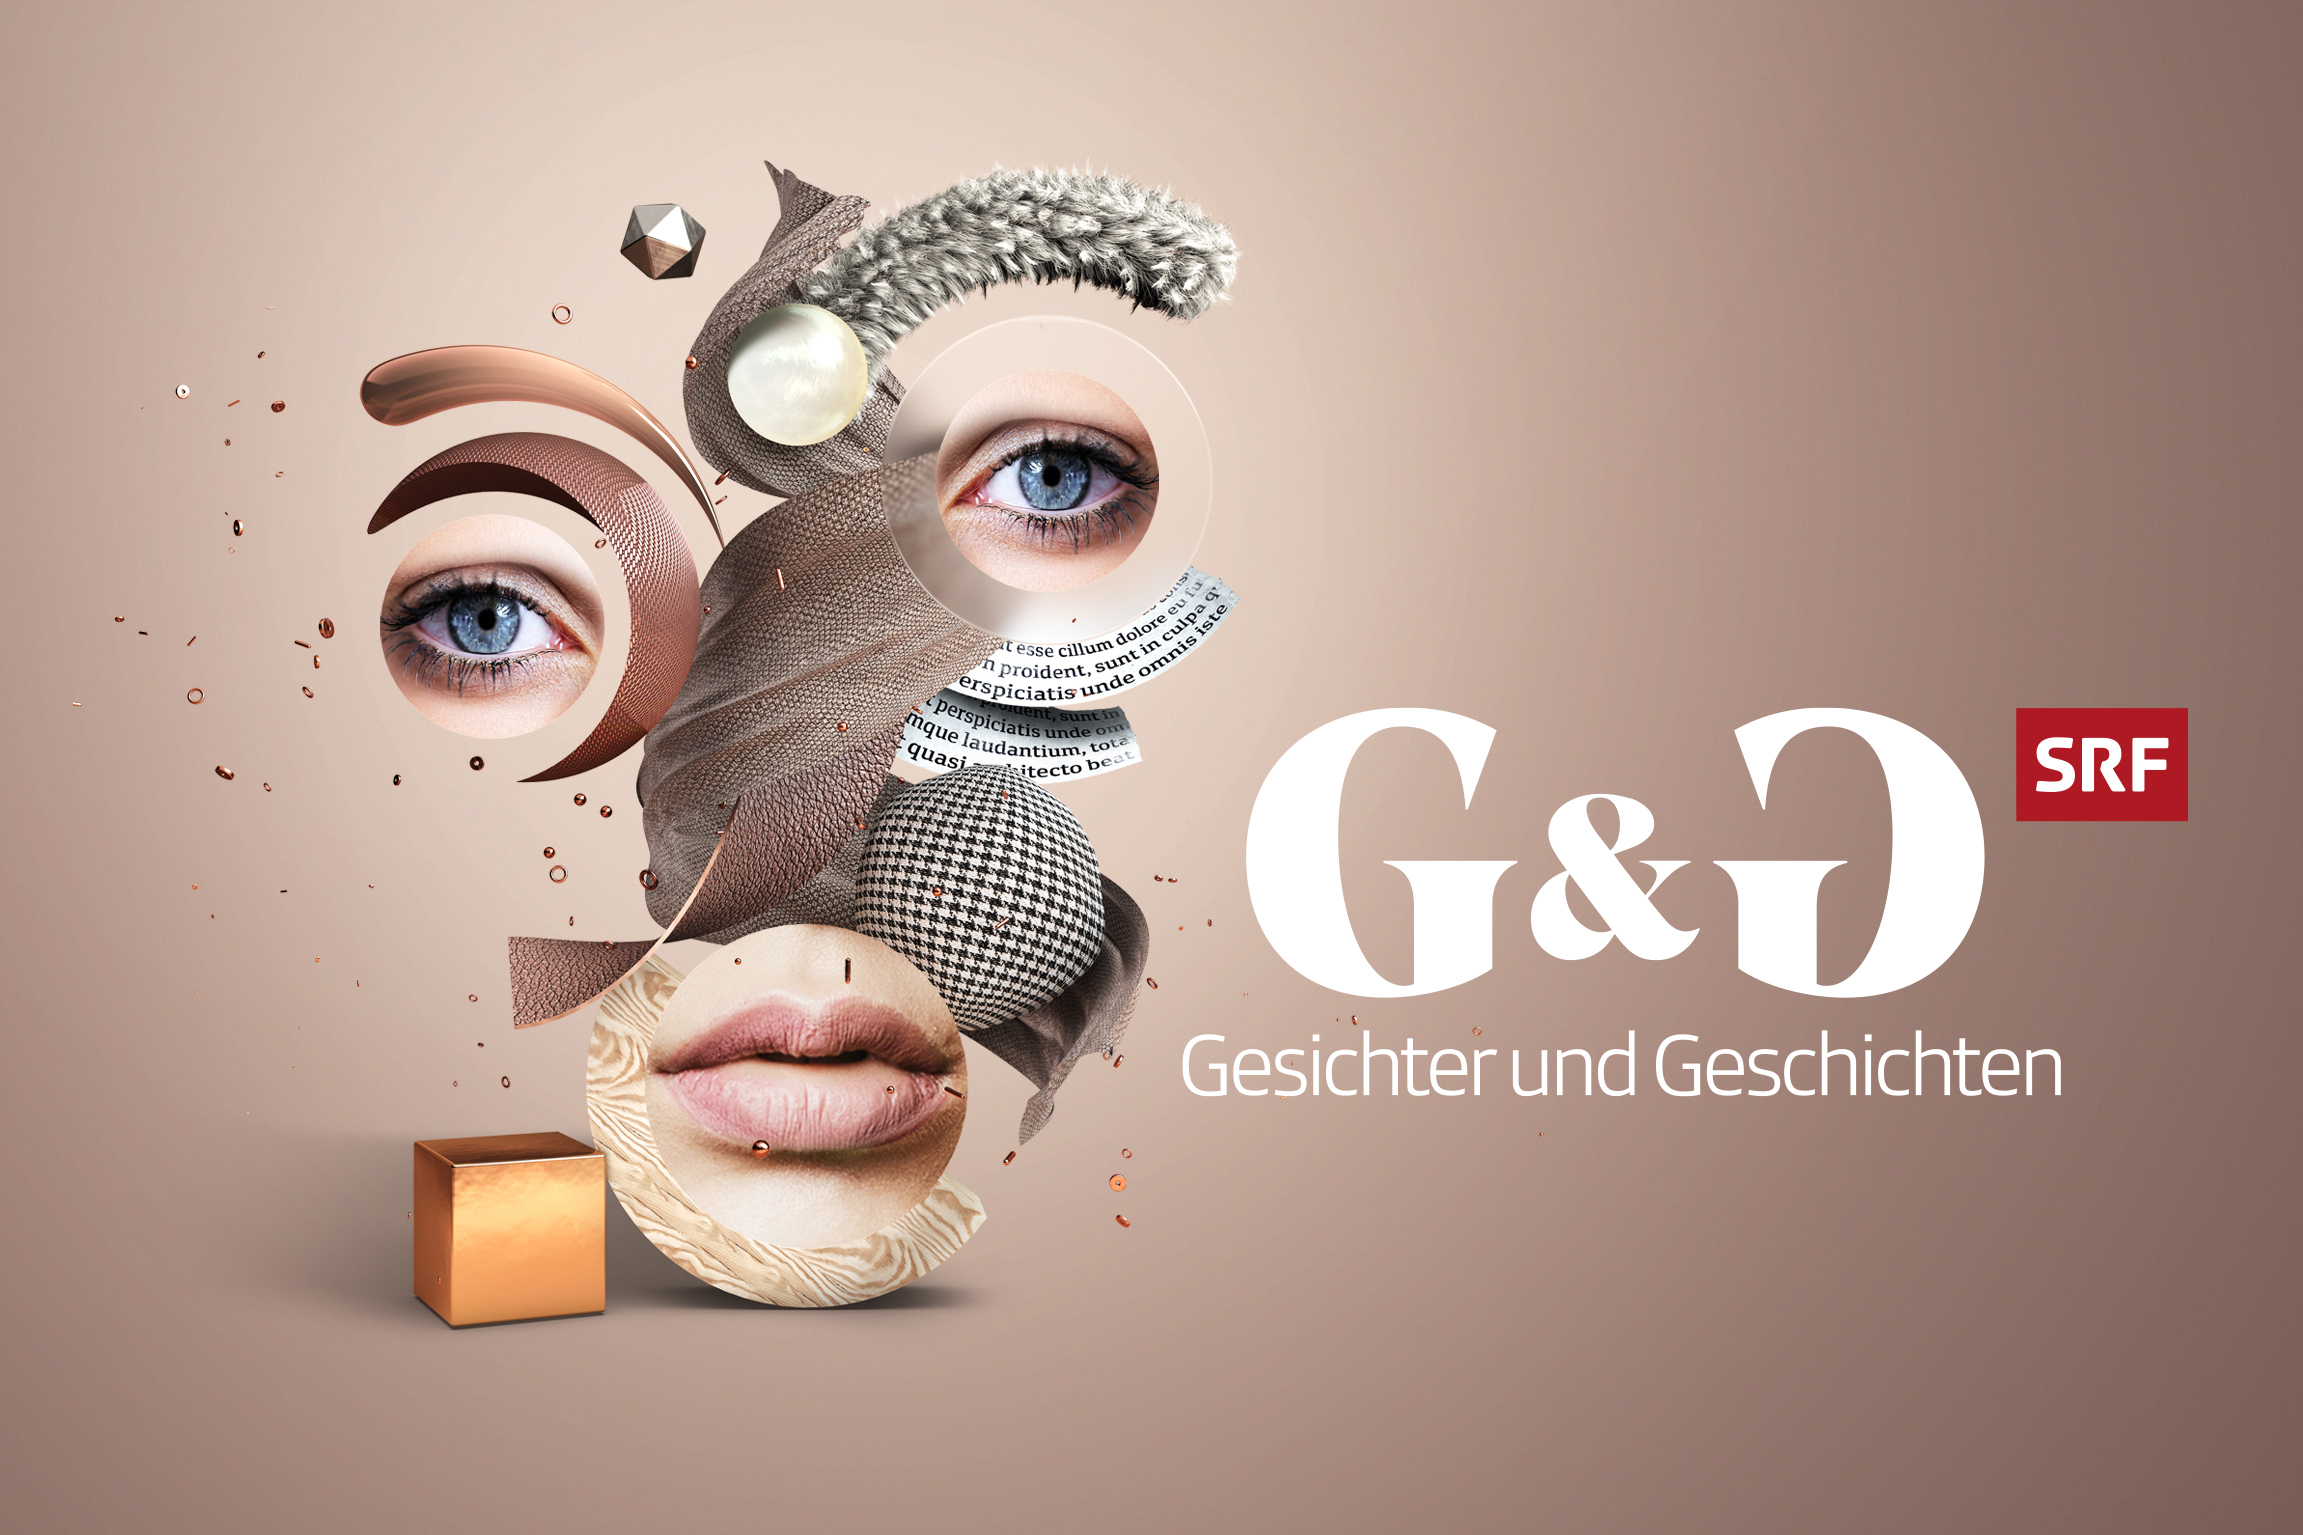 G&G – Gesichter und GeschichtenKeyvisual2020Copyright: SRF